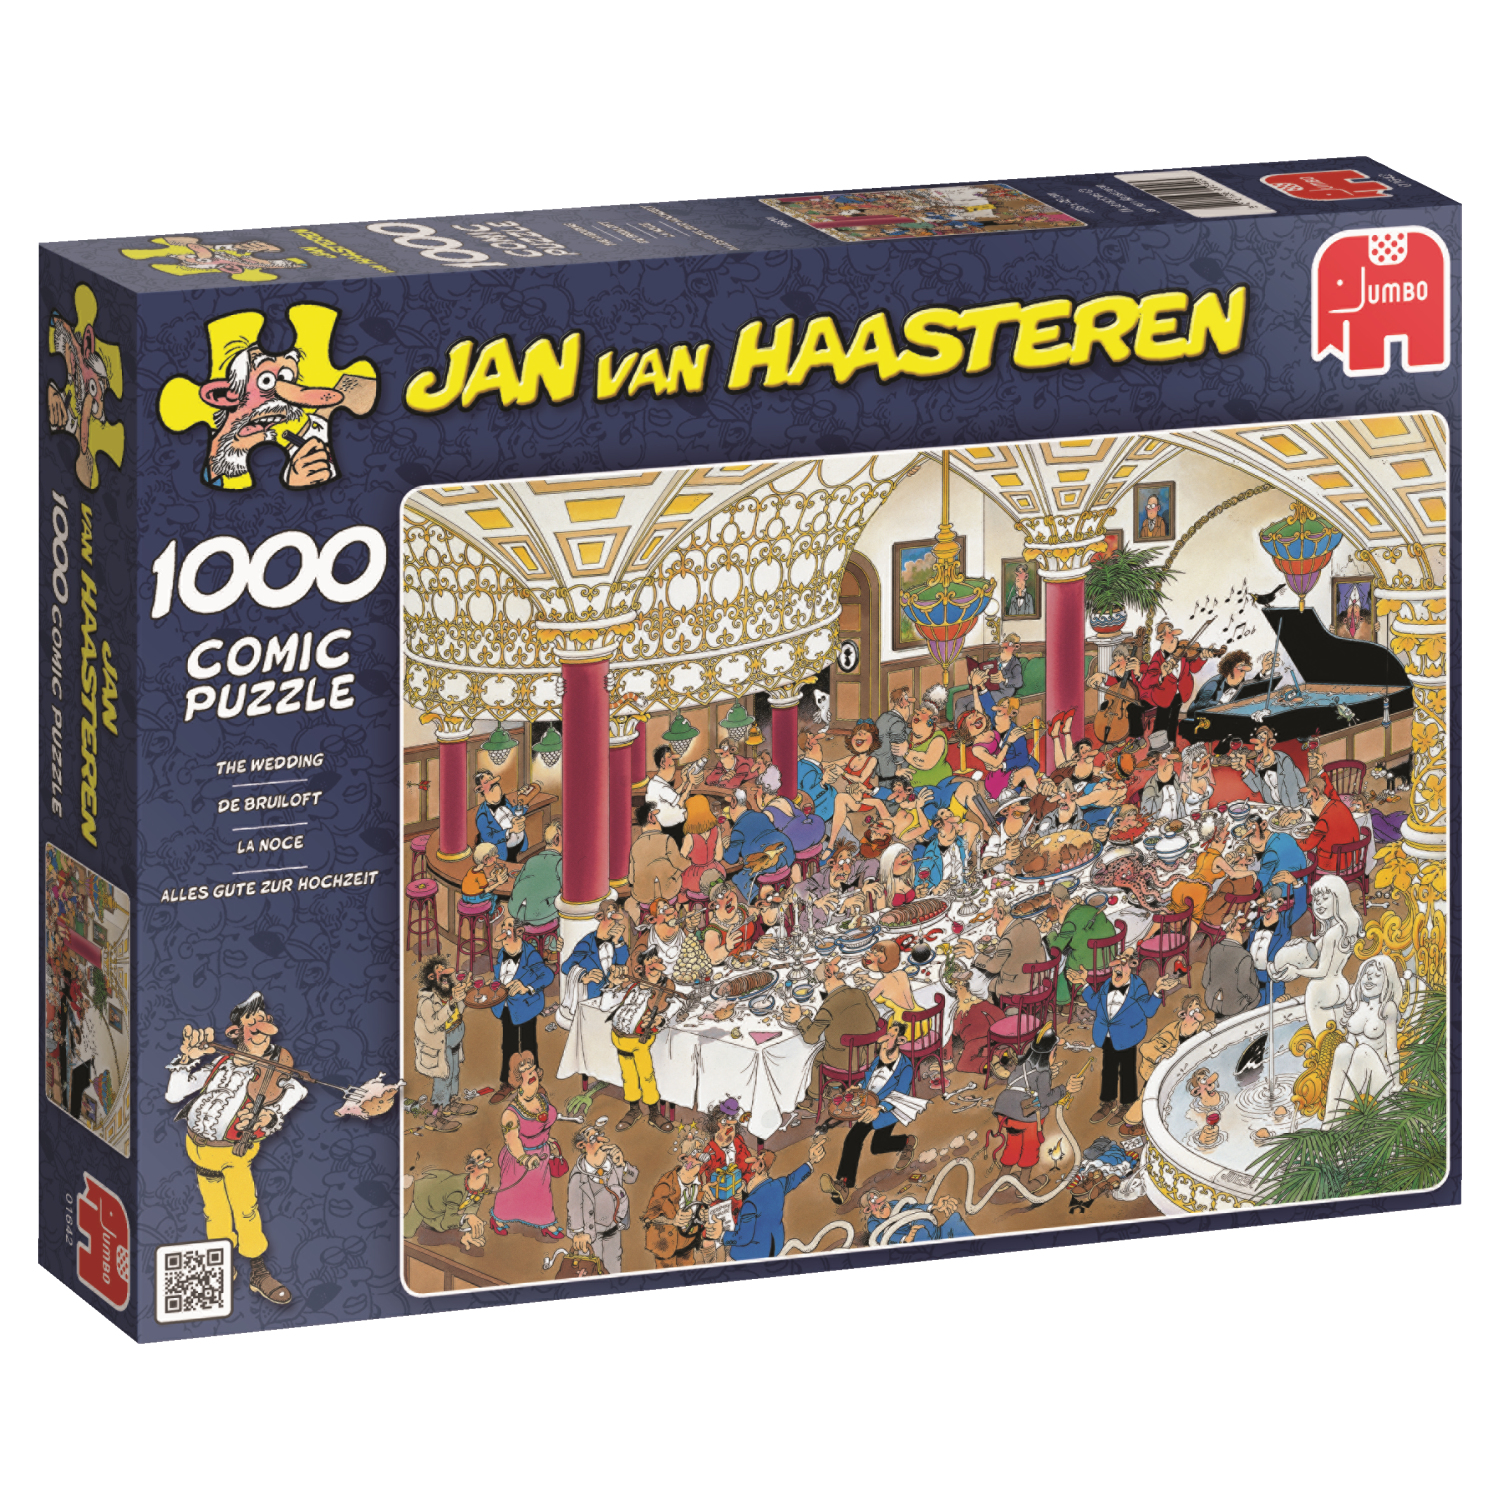 muur Complex astronomie Productdata: Jan van Haasteren The Wedding 1000 pcs Legpuzzel 1000 stuk(s)  Humor Puzzels (01642)